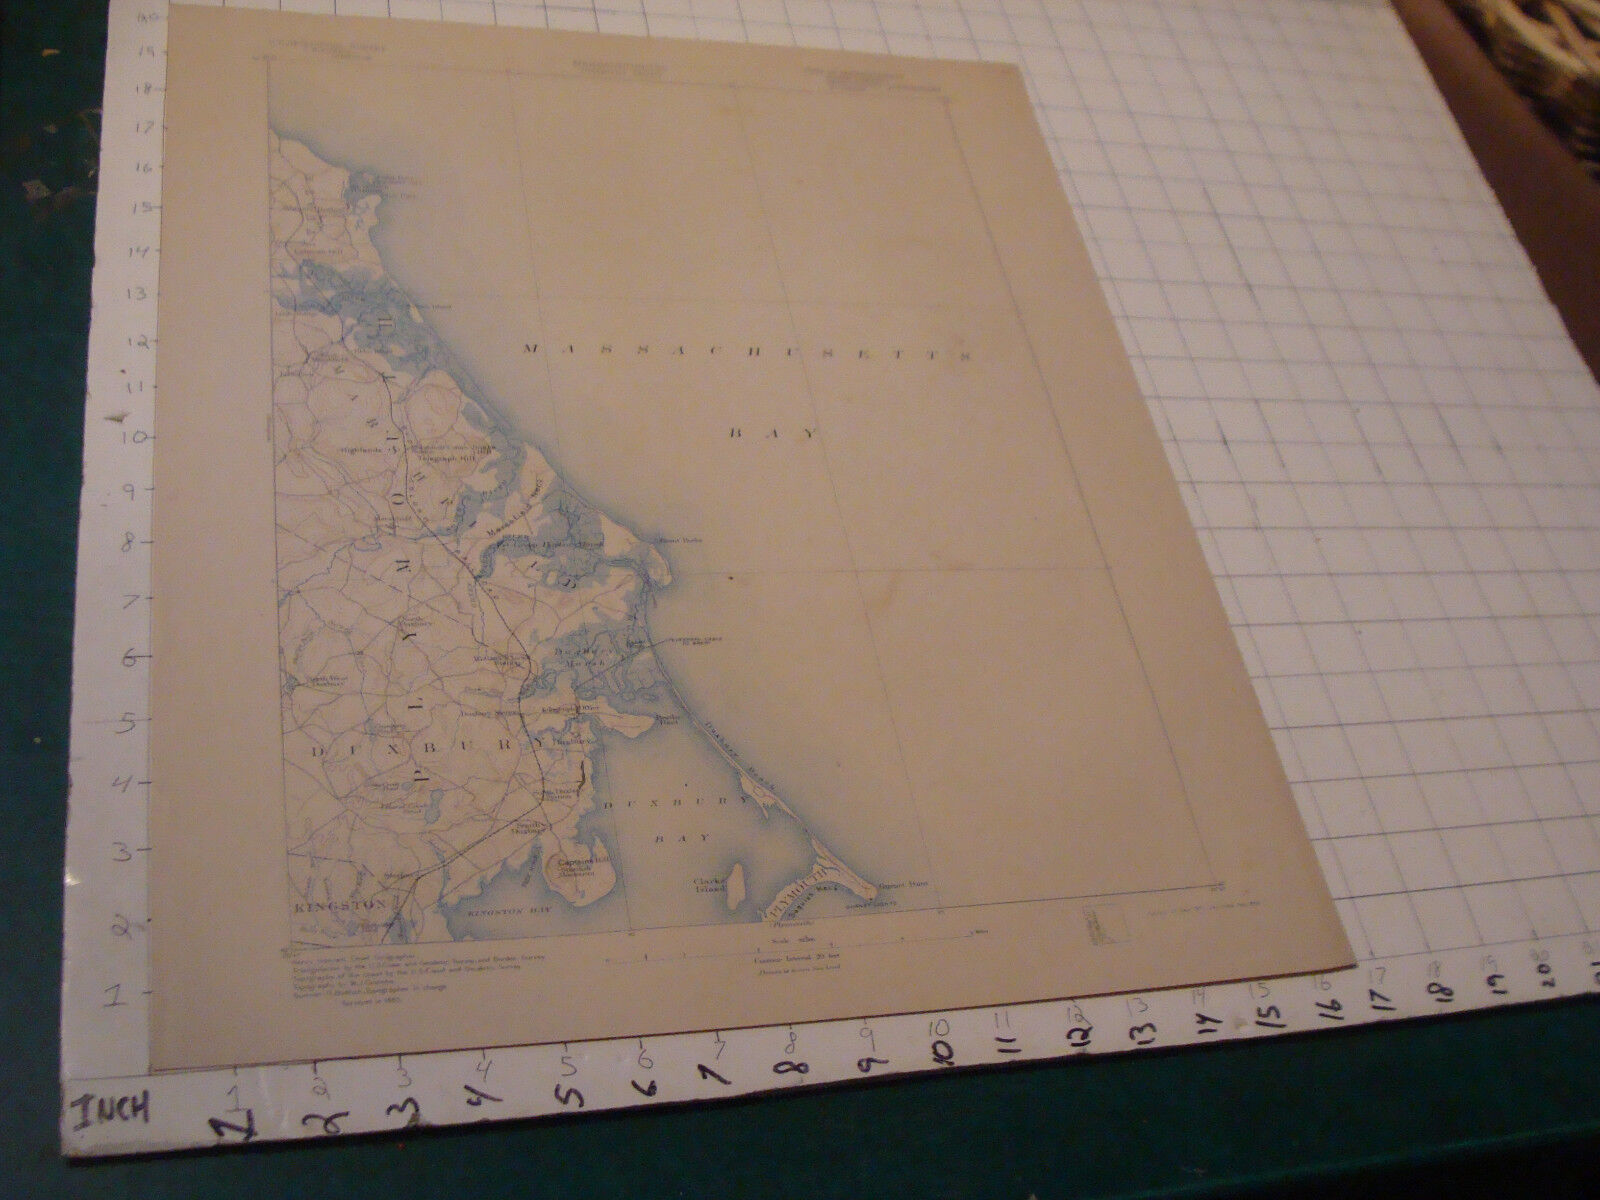 original Mass. Map: 1898 MASSACHUSETTS DUXBURY SHEET, aprox 20 X 16